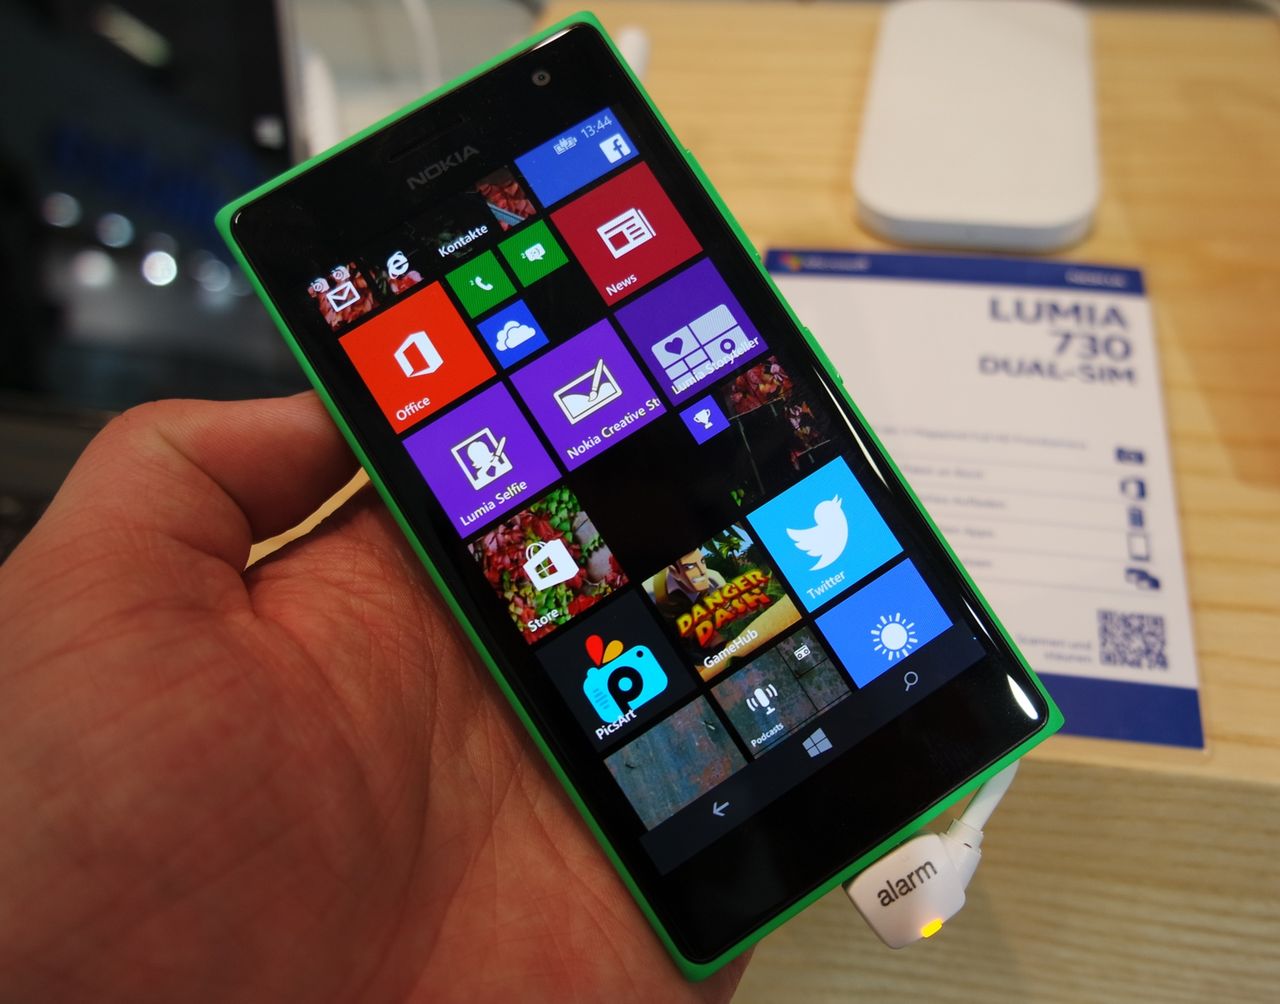 Nokia Lumia 735/730 Dual SIM - smartfon nie tylko do zdjęć selfie [pierwsze wrażenia]